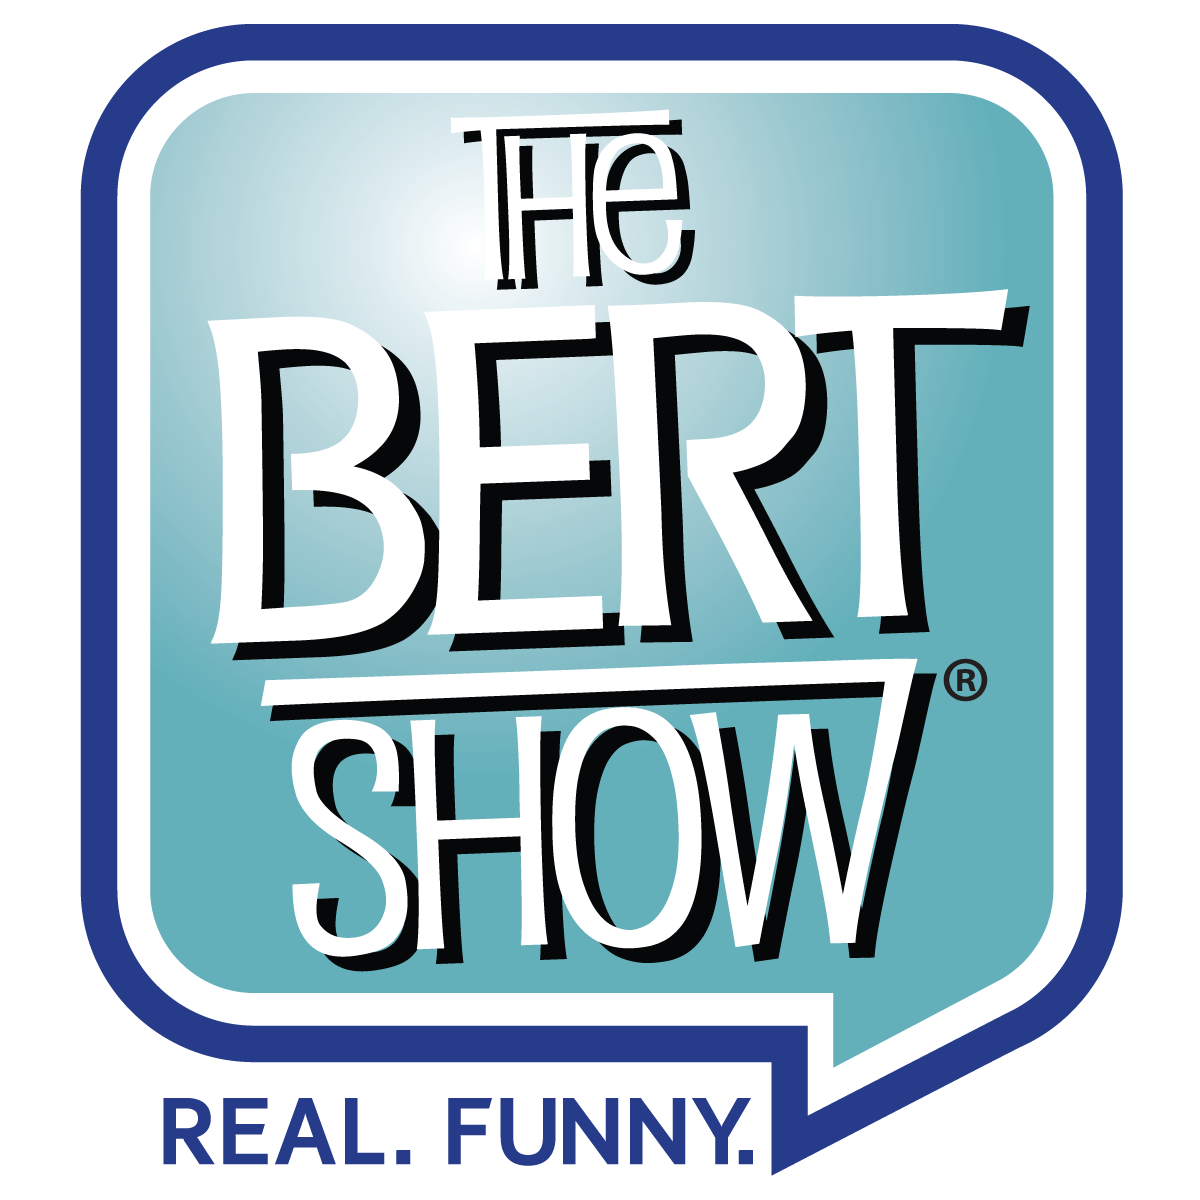 TheBertShow